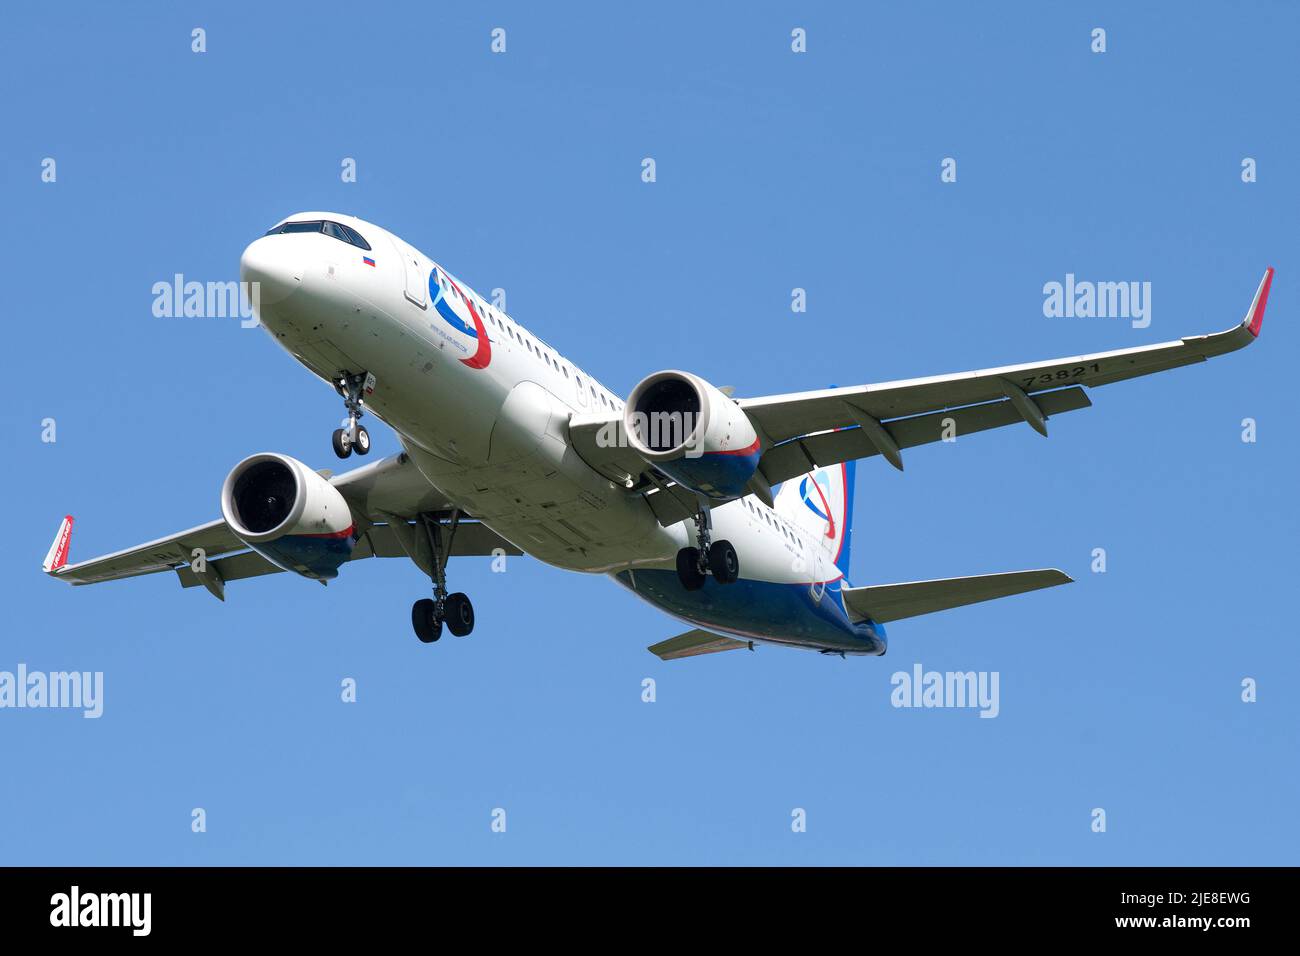 SANKT PETERSBURG, RUSSLAND - 02. JUNI 2022: Flugzeug Airbus A320neo (RA-73821) von Ural Airlines auf dem Gleitschirm am wolkenlosen blauen Himmel Stockfoto